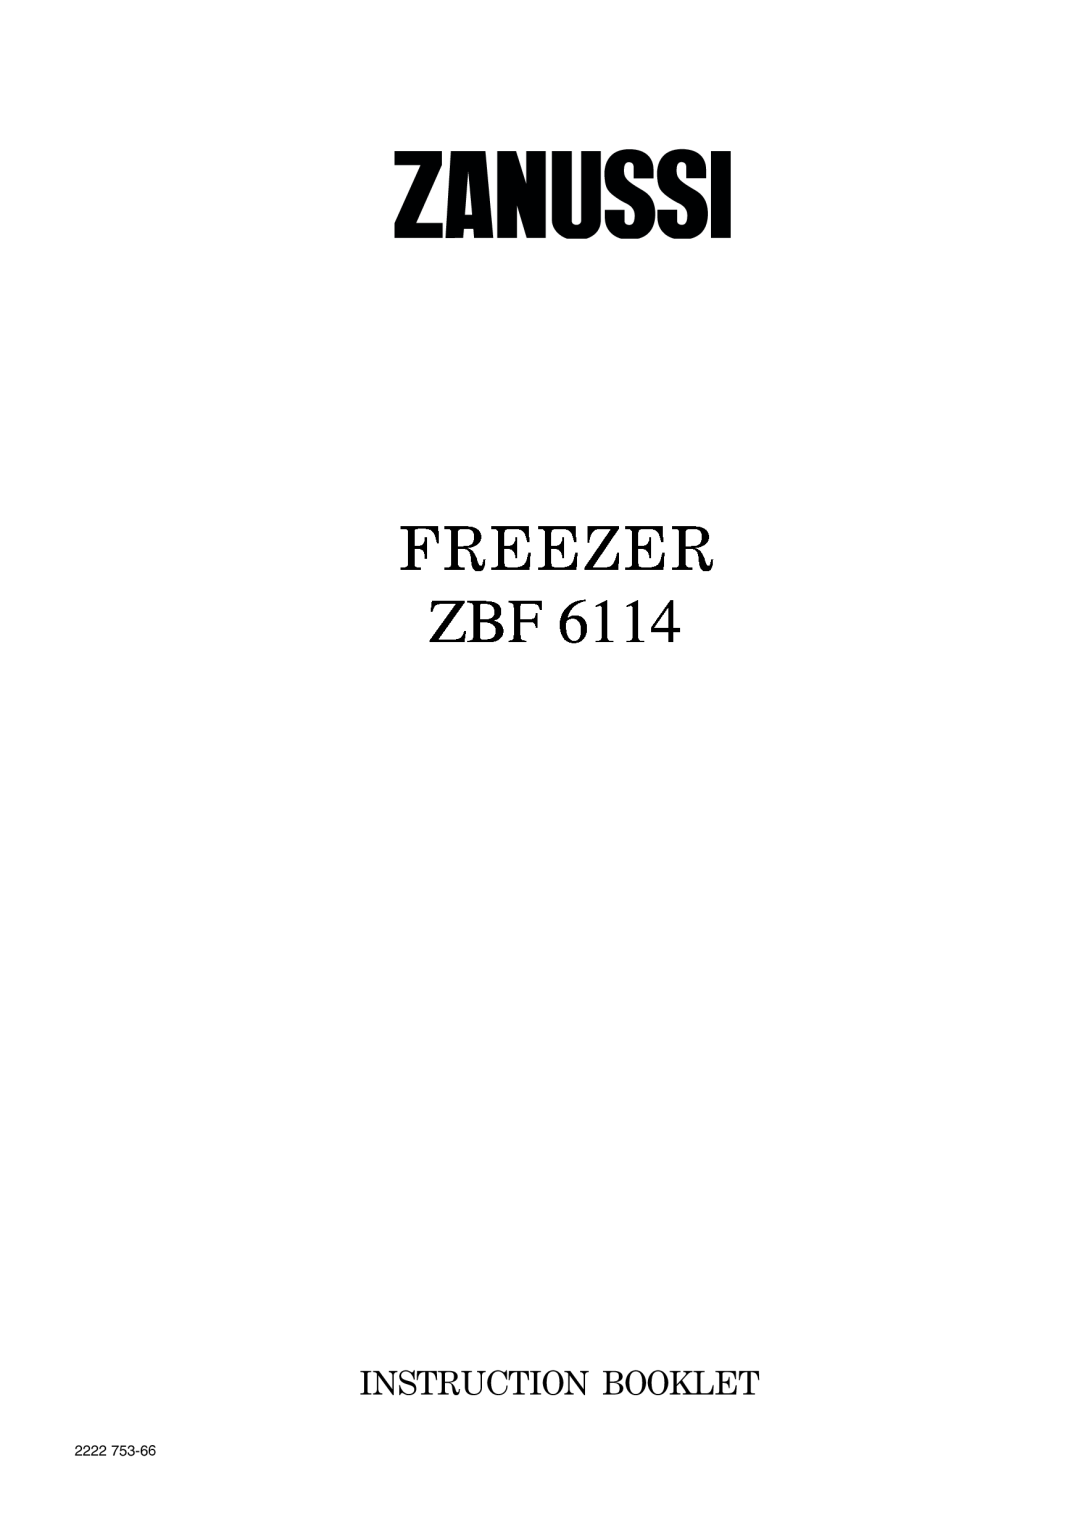 Zanussi ZBF 6114 manual Freezer, Instruction Booklet, 2222 